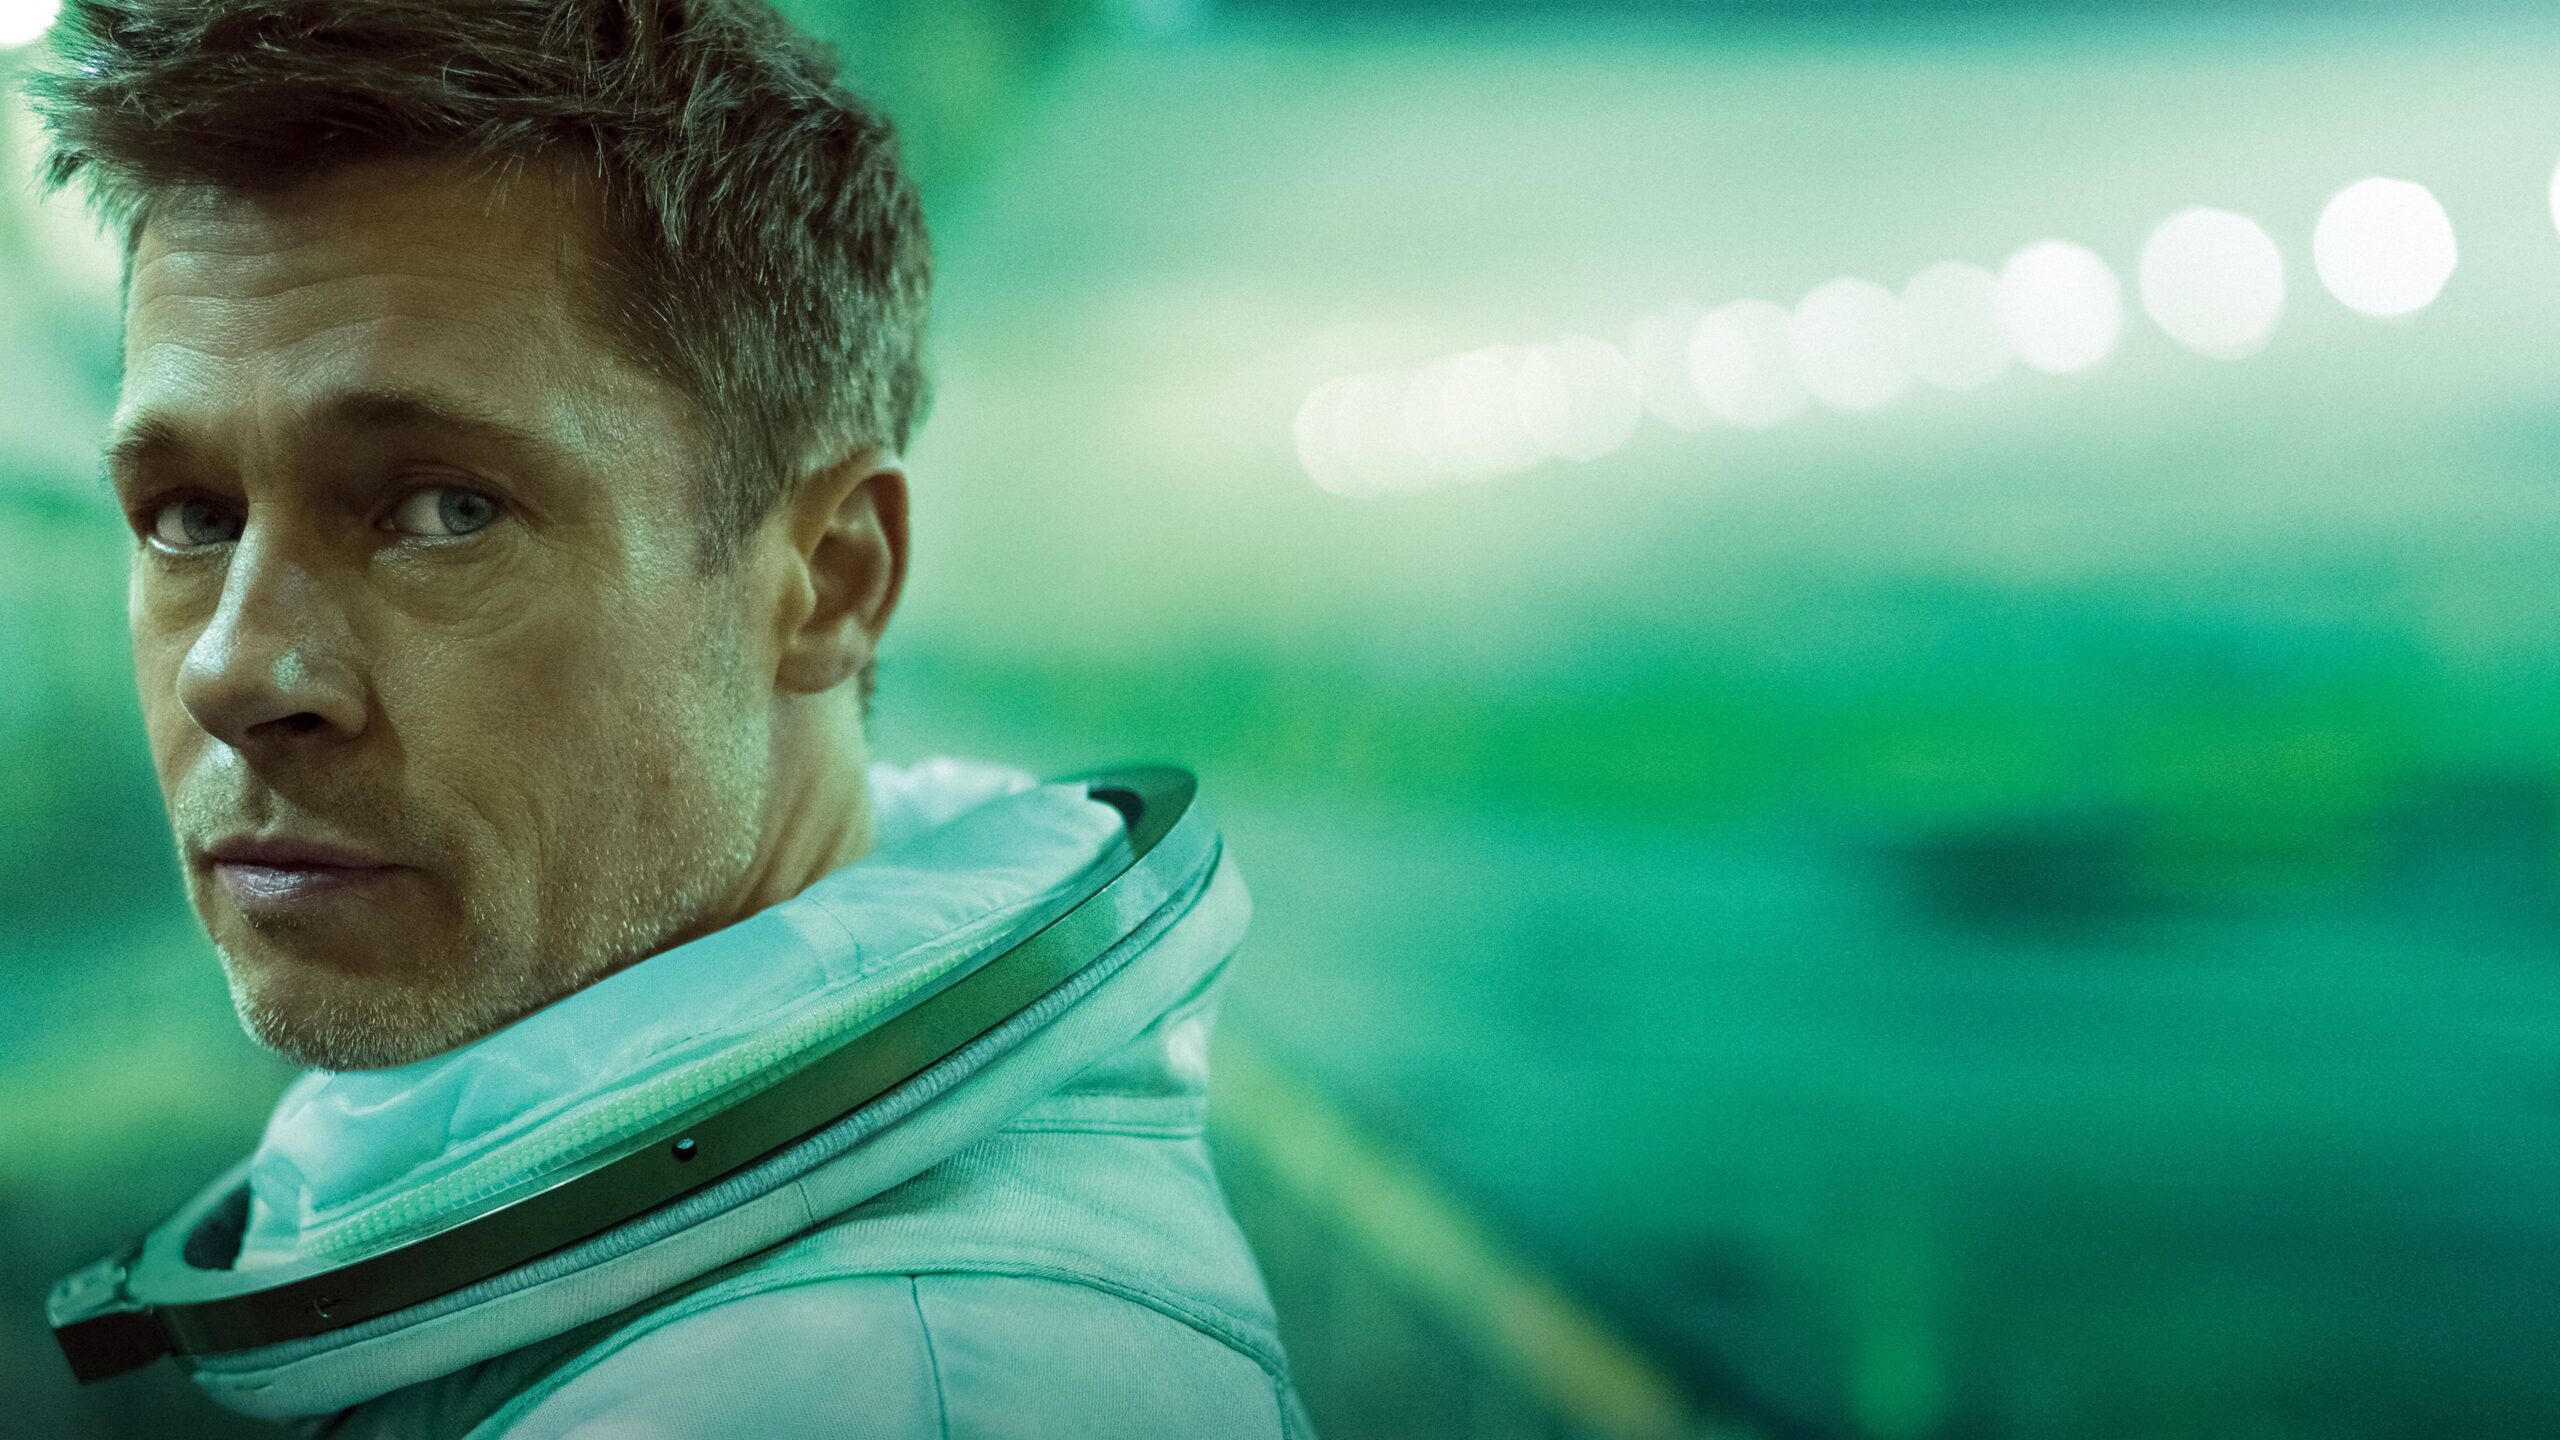 Brad Pitt actor principal de Ad Astra, una epopeya espacial escrita y dirigida por James Gray. En busca de su padre, Tommy Lee Jones.